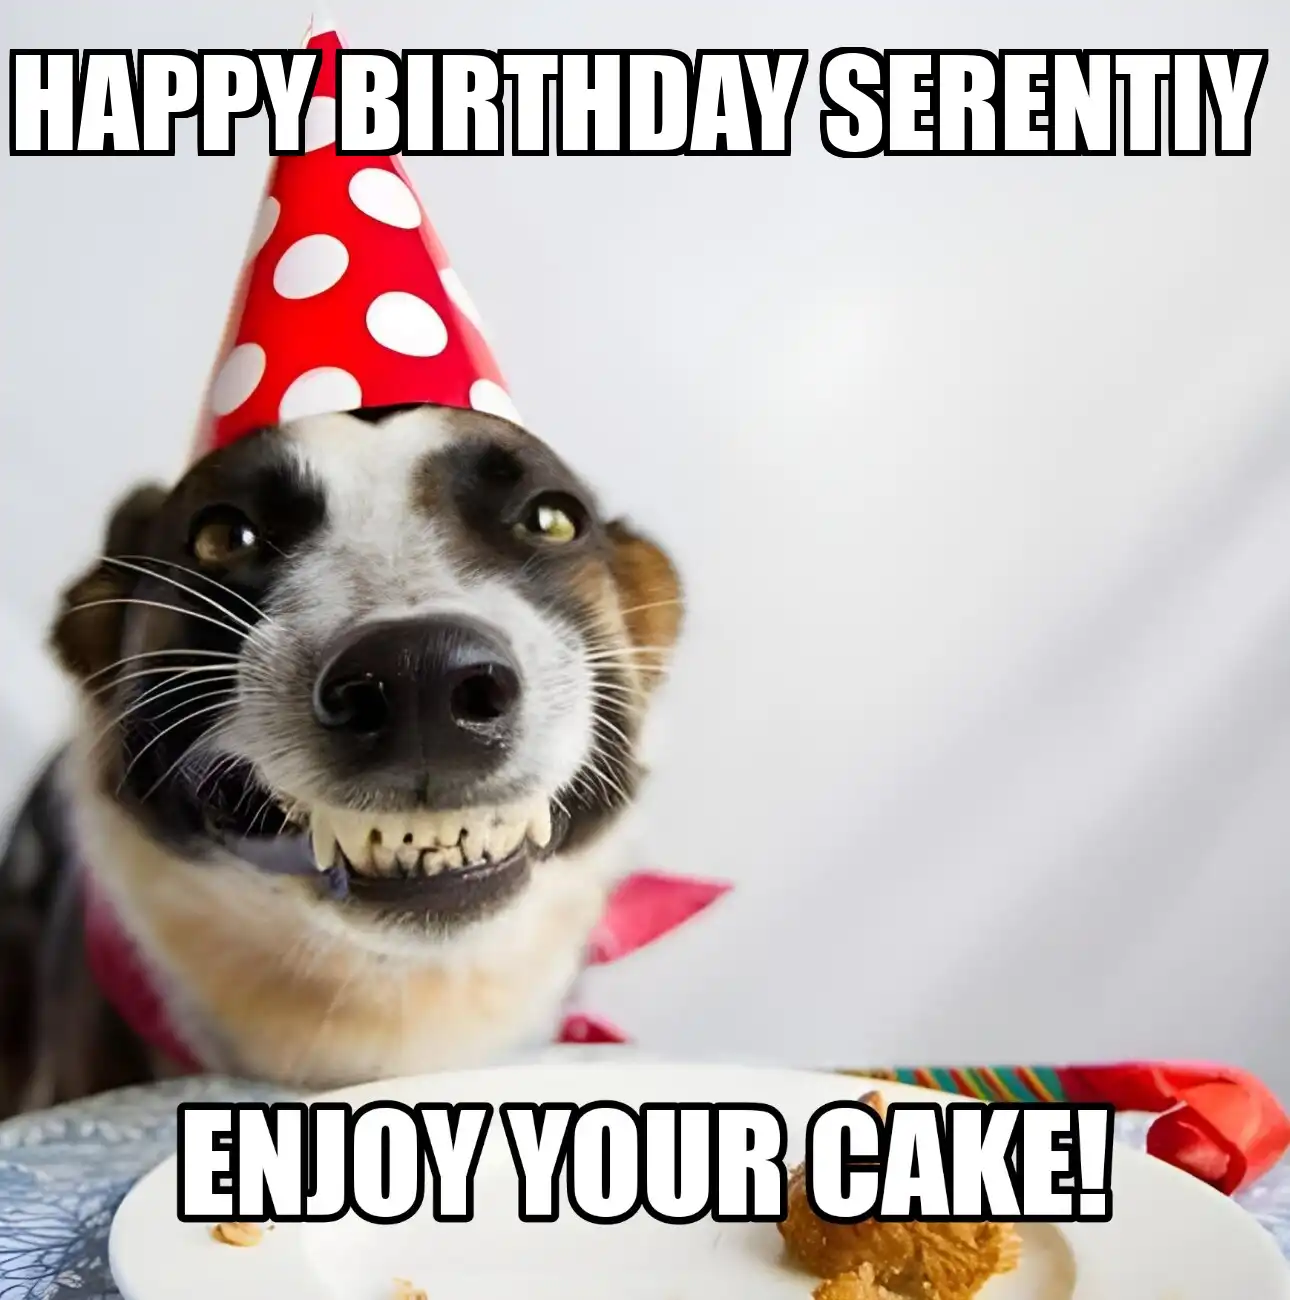 Happy Birthday Serentiy Enjoy Your Cake Dog Meme